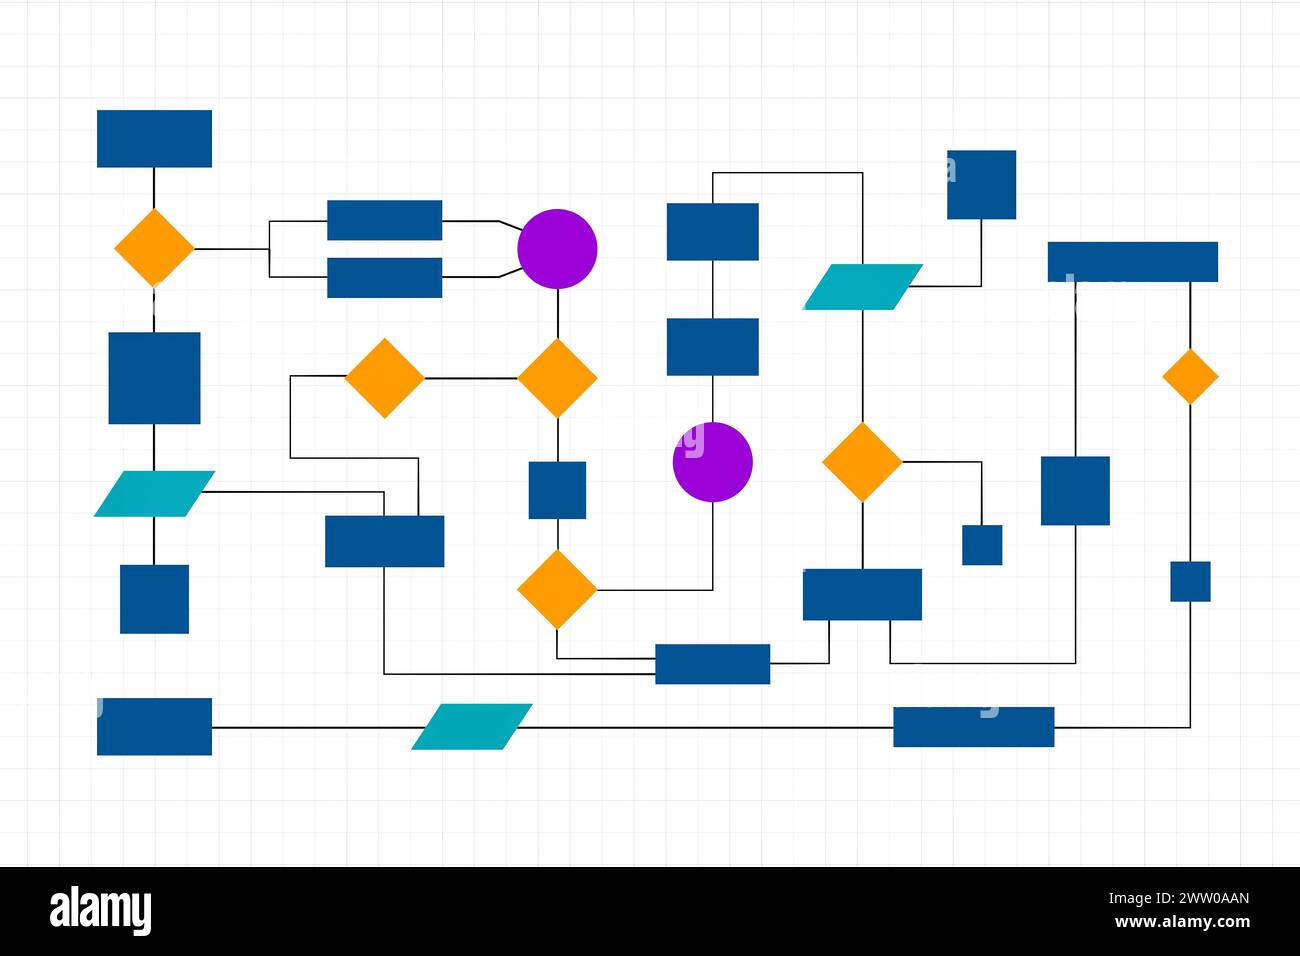 Flussdiagramm, Prozesse, Organisation, Plan und Verfahren. Mehrfarbiges Business-Flow-Diagramm, Workflow. Visualisierung von Organisationen, Konzepten, Indel Stockfoto